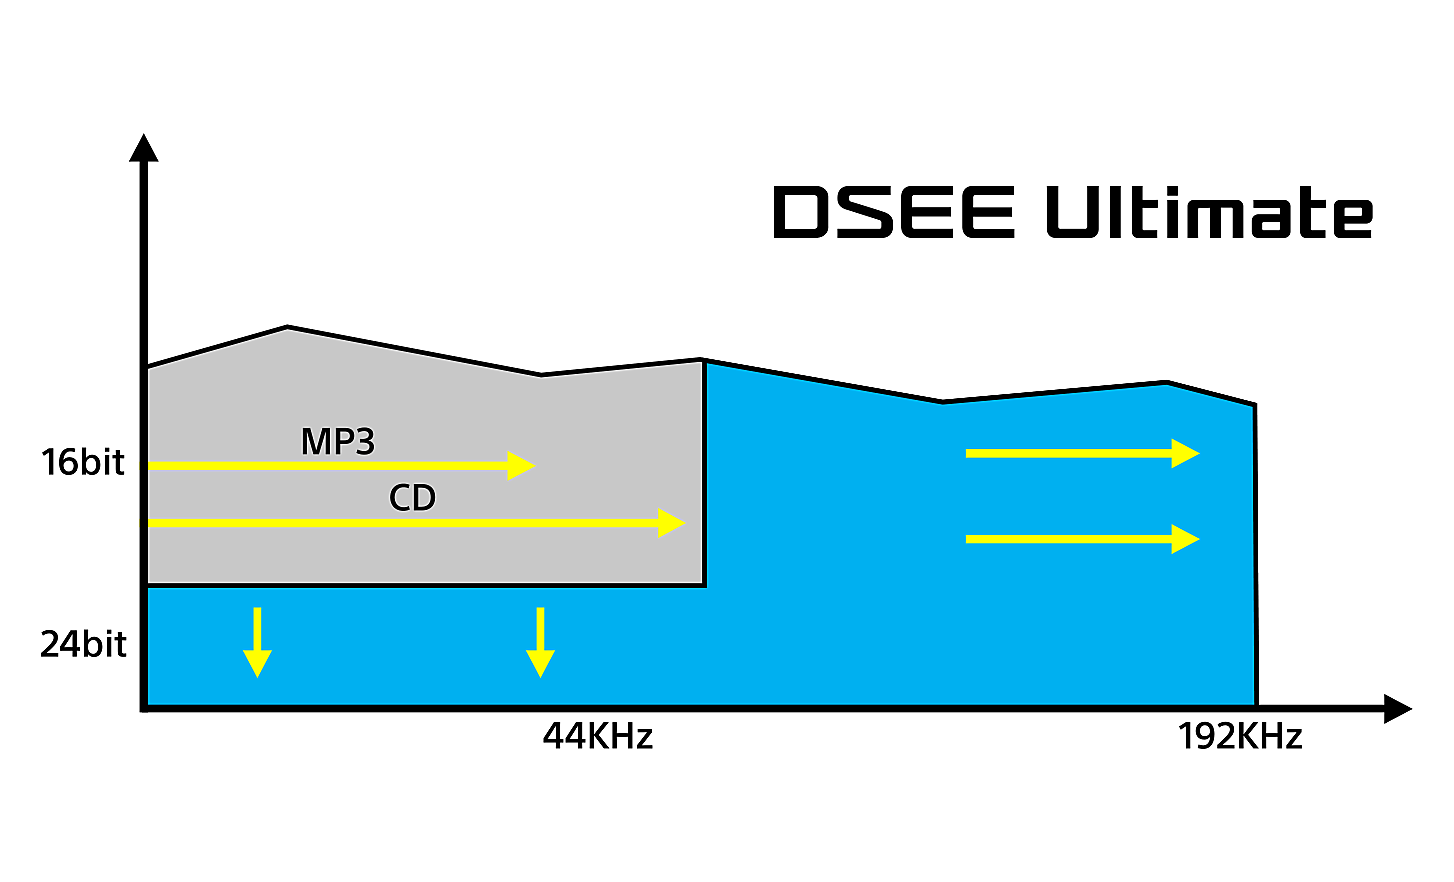 Graf znázorňuje vplyvy technológie DSEE Ultimate na digitálnu hudbu